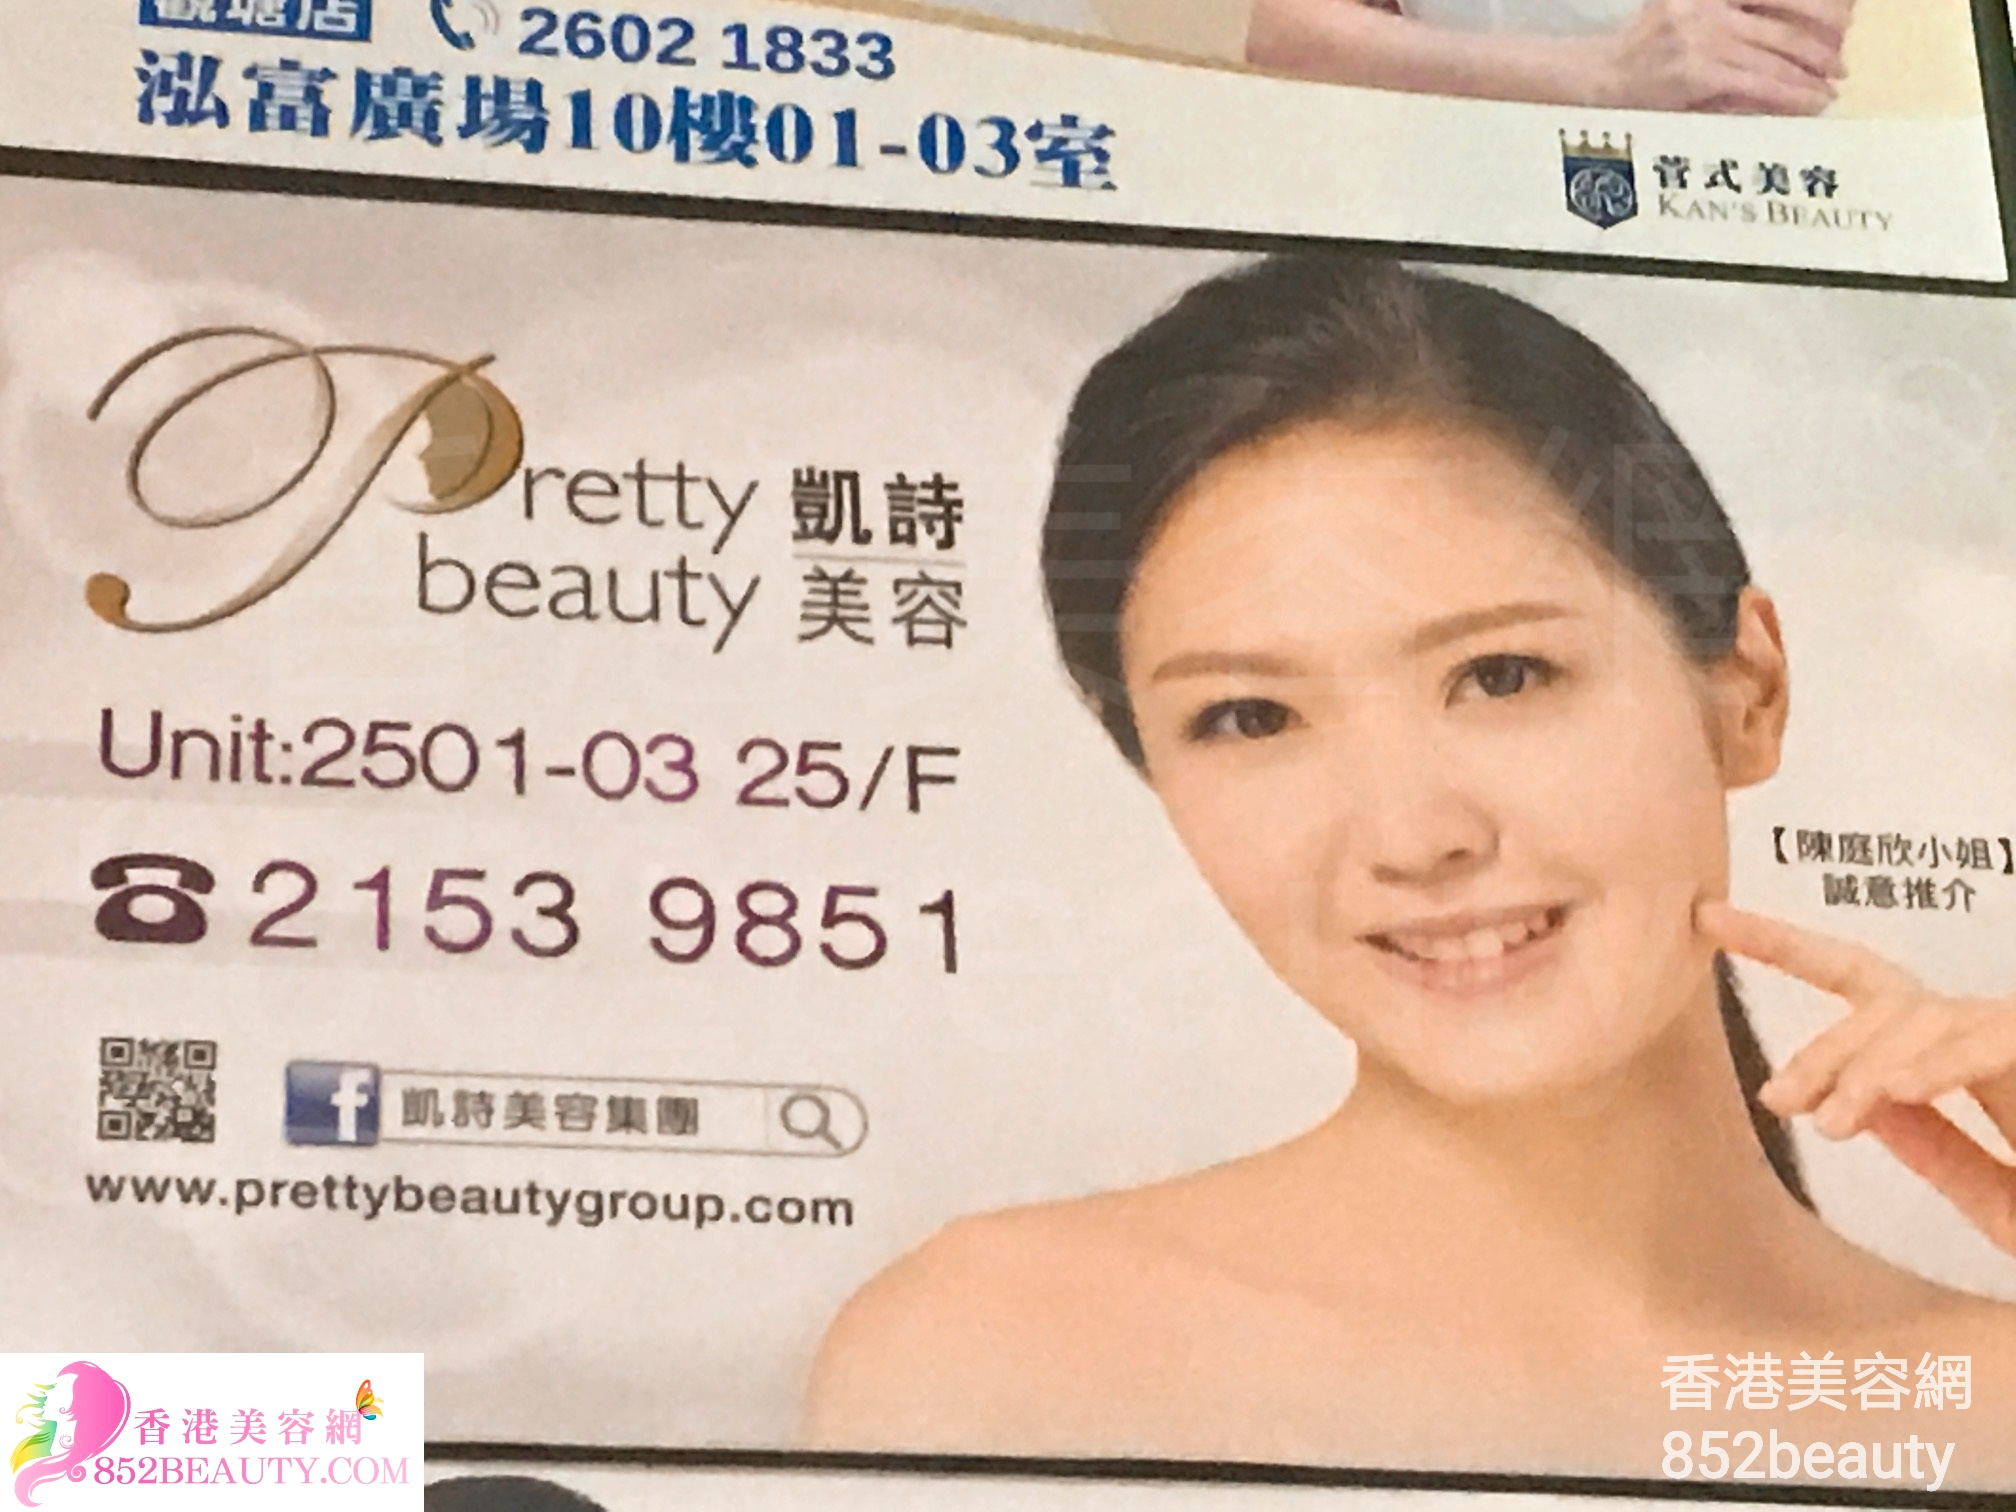 美容院 Beauty Salon: Pretty beauty 凱詩美容 (觀塘店)